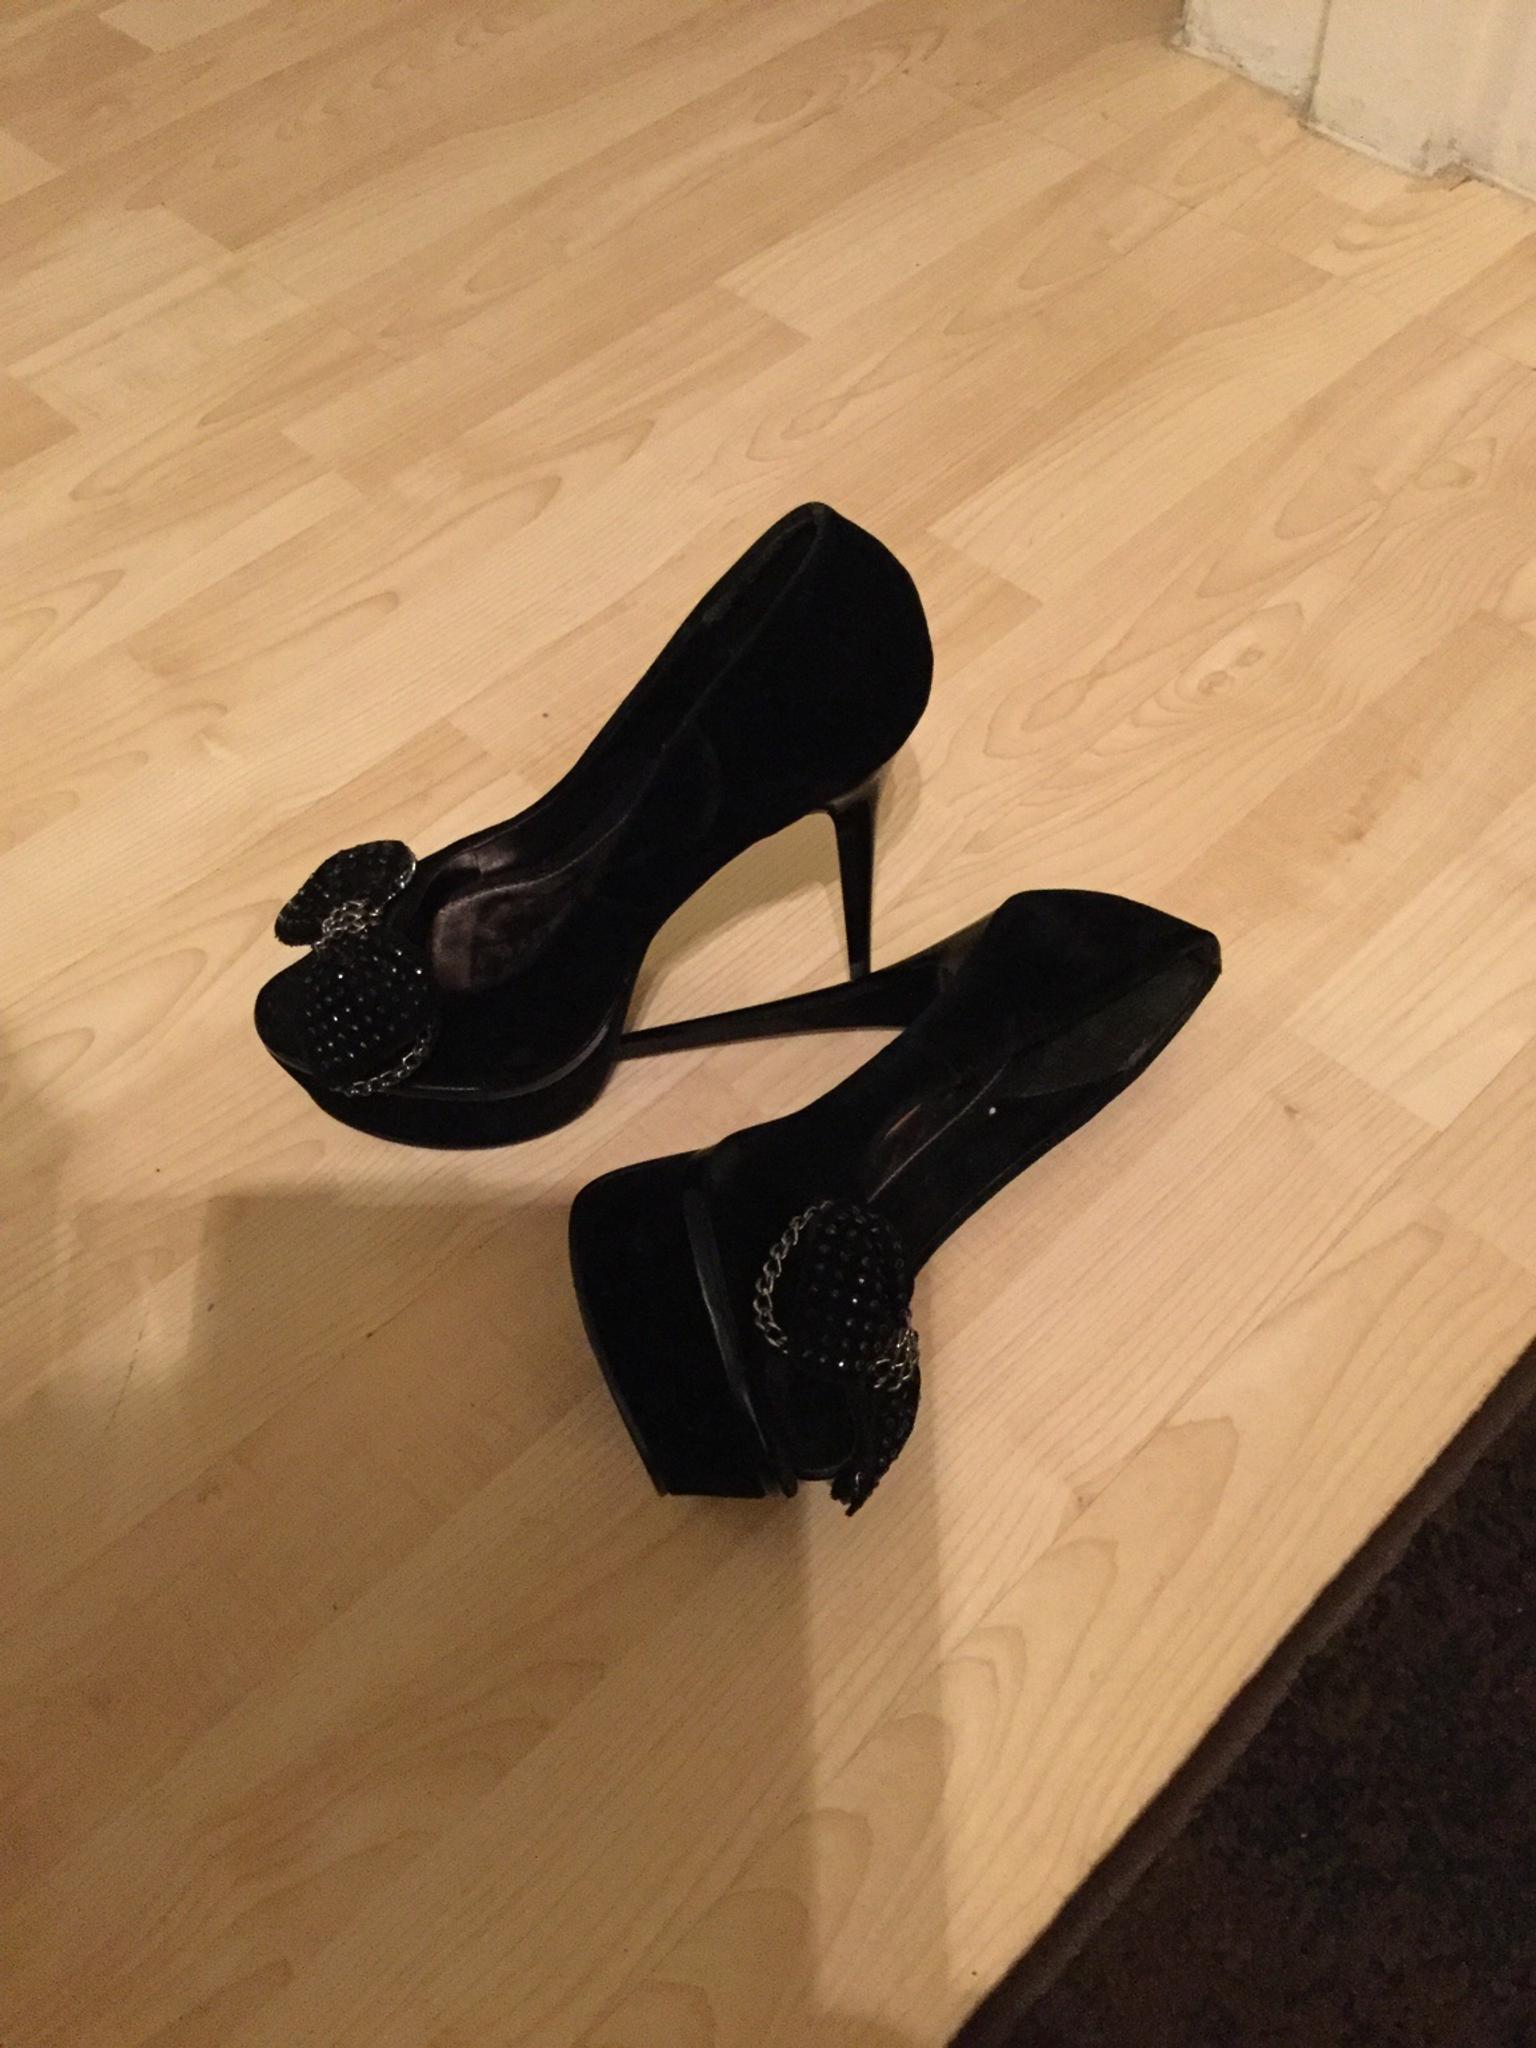 7 inch heels uk